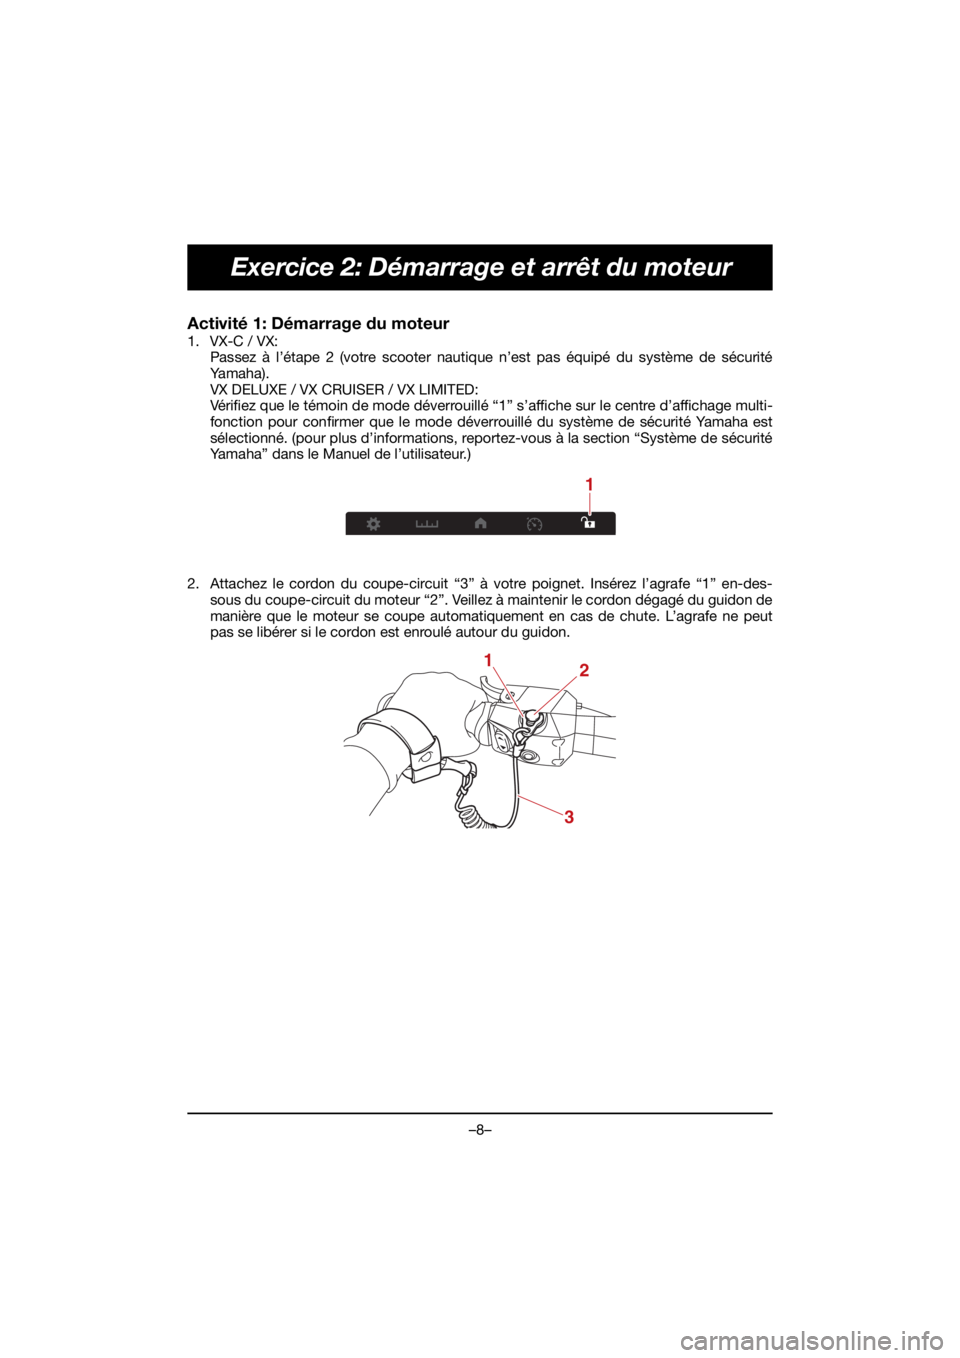 YAMAHA VX DELUXE 2021  Manuale de Empleo (in Spanish) –8–
Exercice 2: Démarrage et arrêt du moteur
Activité 1: Démarrage du moteur 
1. VX-C / VX:Passez à l’étape 2 (votre scooter nautique n’est pas équipé du système de sécurité
Ya m a 